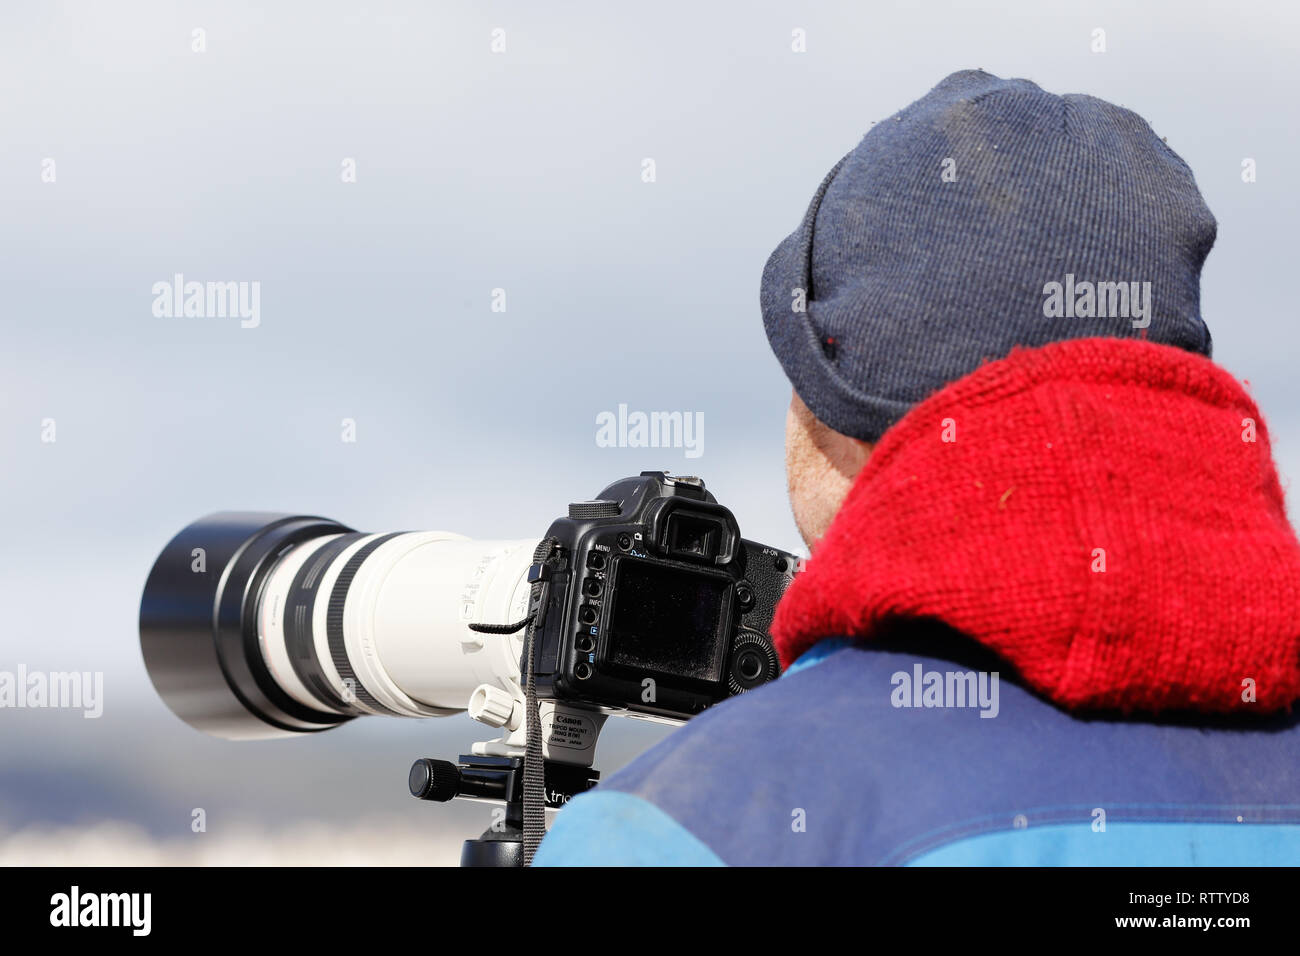 Rannesta, Schweden - 21. März 2015: Ansicht der Rückseite ein Fotograf mit einem Teleobjektiv ausgestattet Kamera auf einem Stativ. Stockfoto